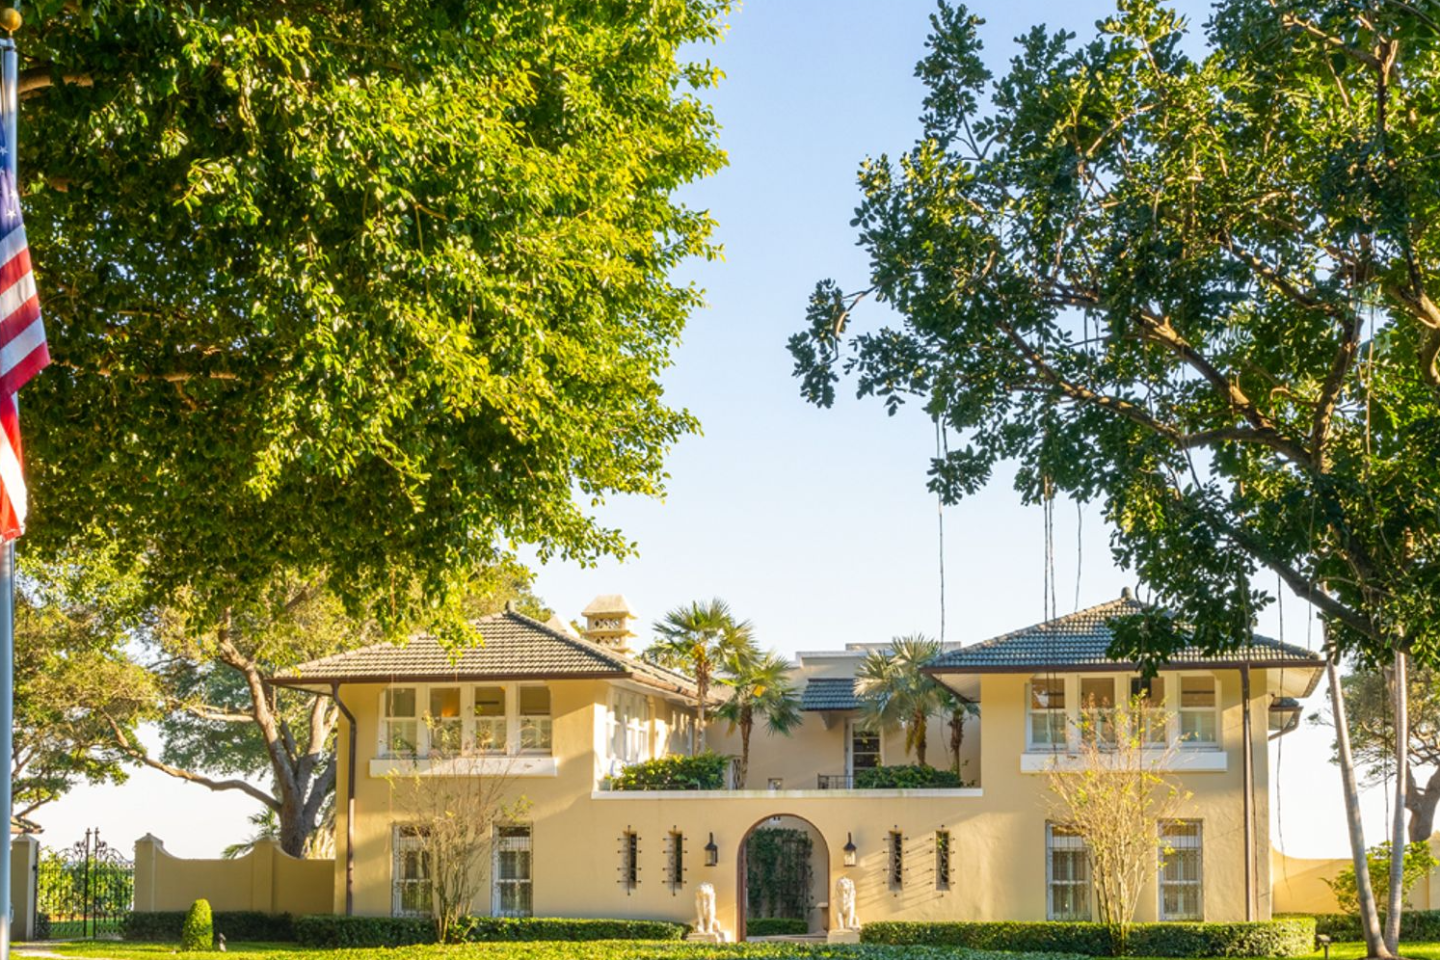 The Villa Serena residence.